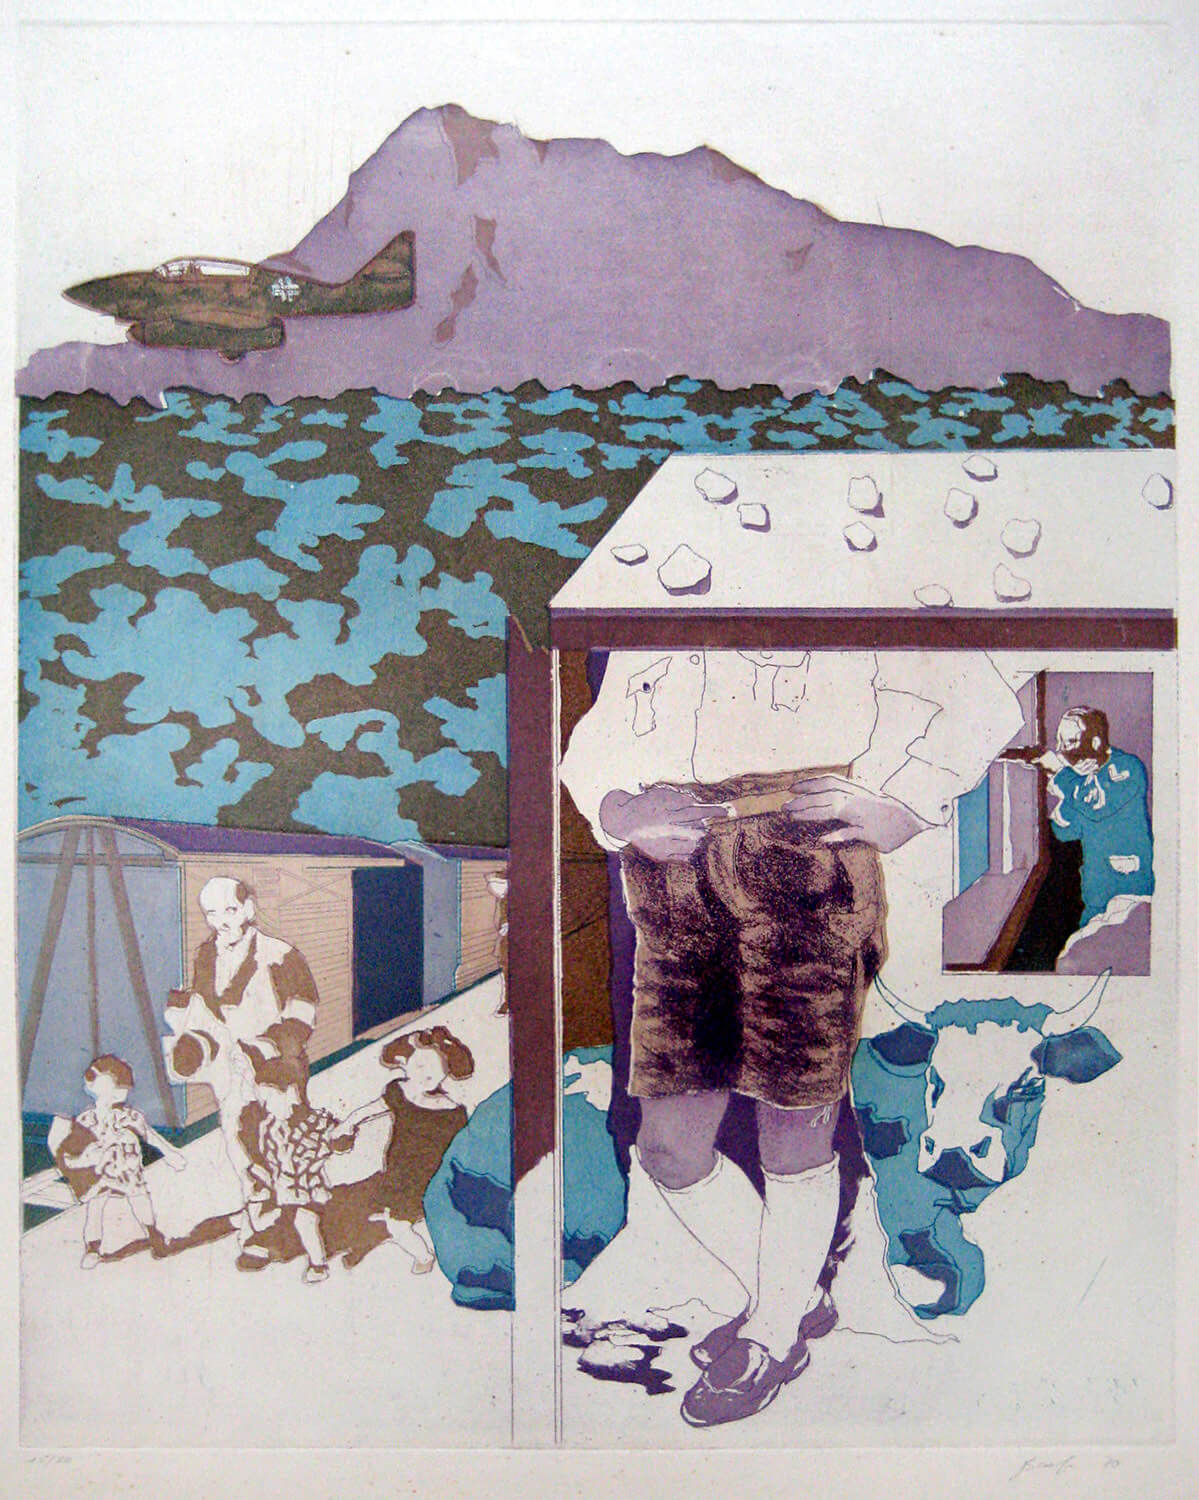 Ulrich Baehr, Sonderbeitrag: Einen Augenblick ruht die Arbeit. Der Führer fährt vorbei, 1970, Farbradierung, Auflage: 20, 54 x 76 cm, Mappe mit 5 Motiven